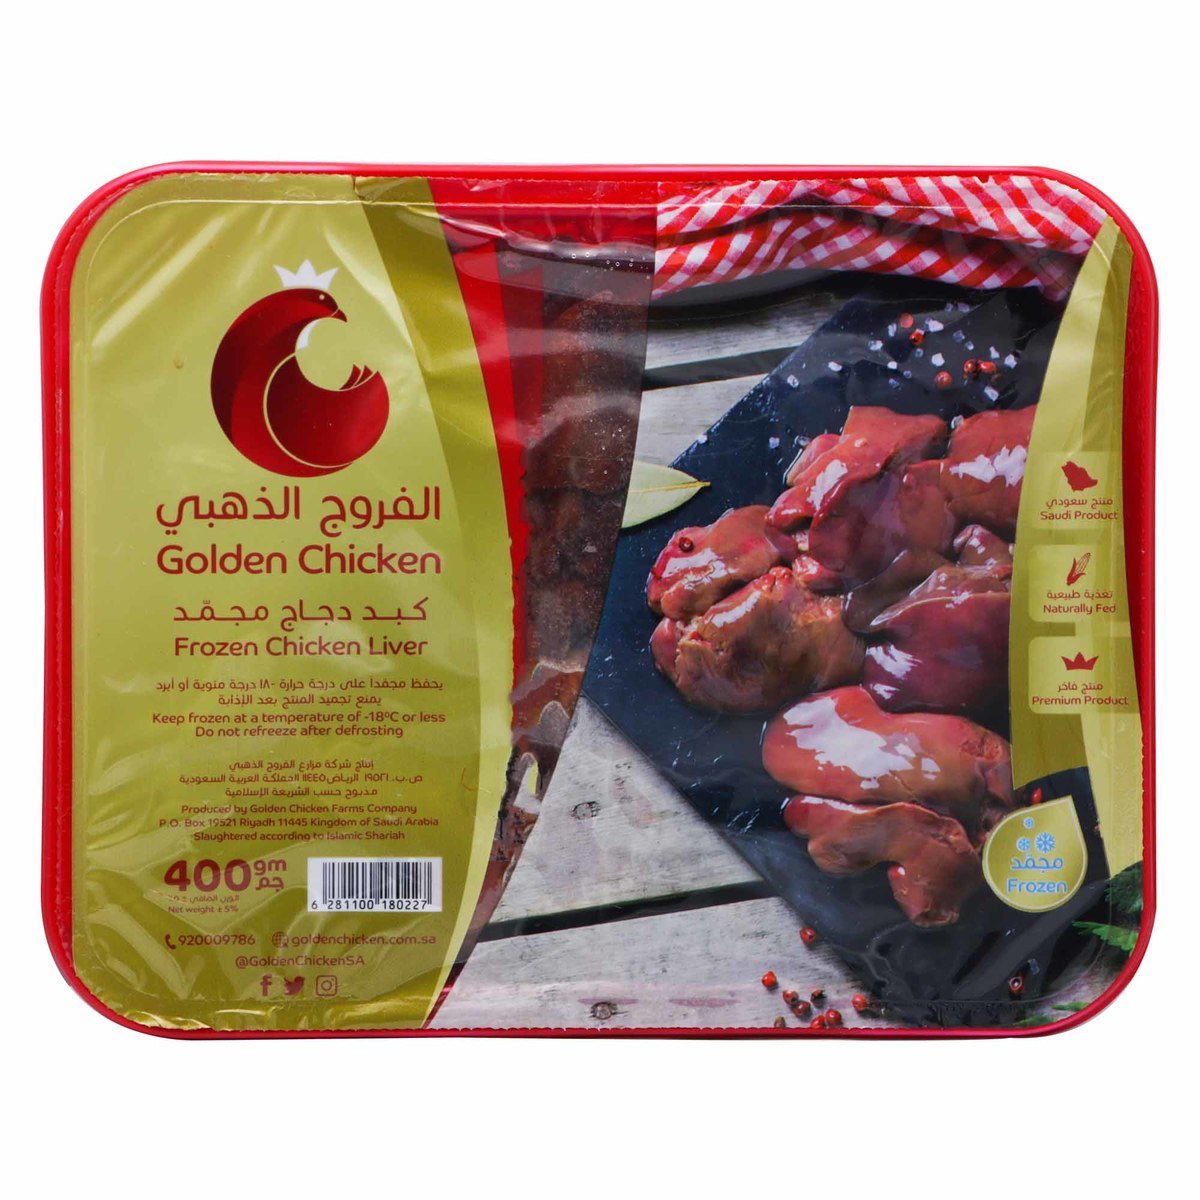 Golden Chicken Frozen Chicken Liver 400g